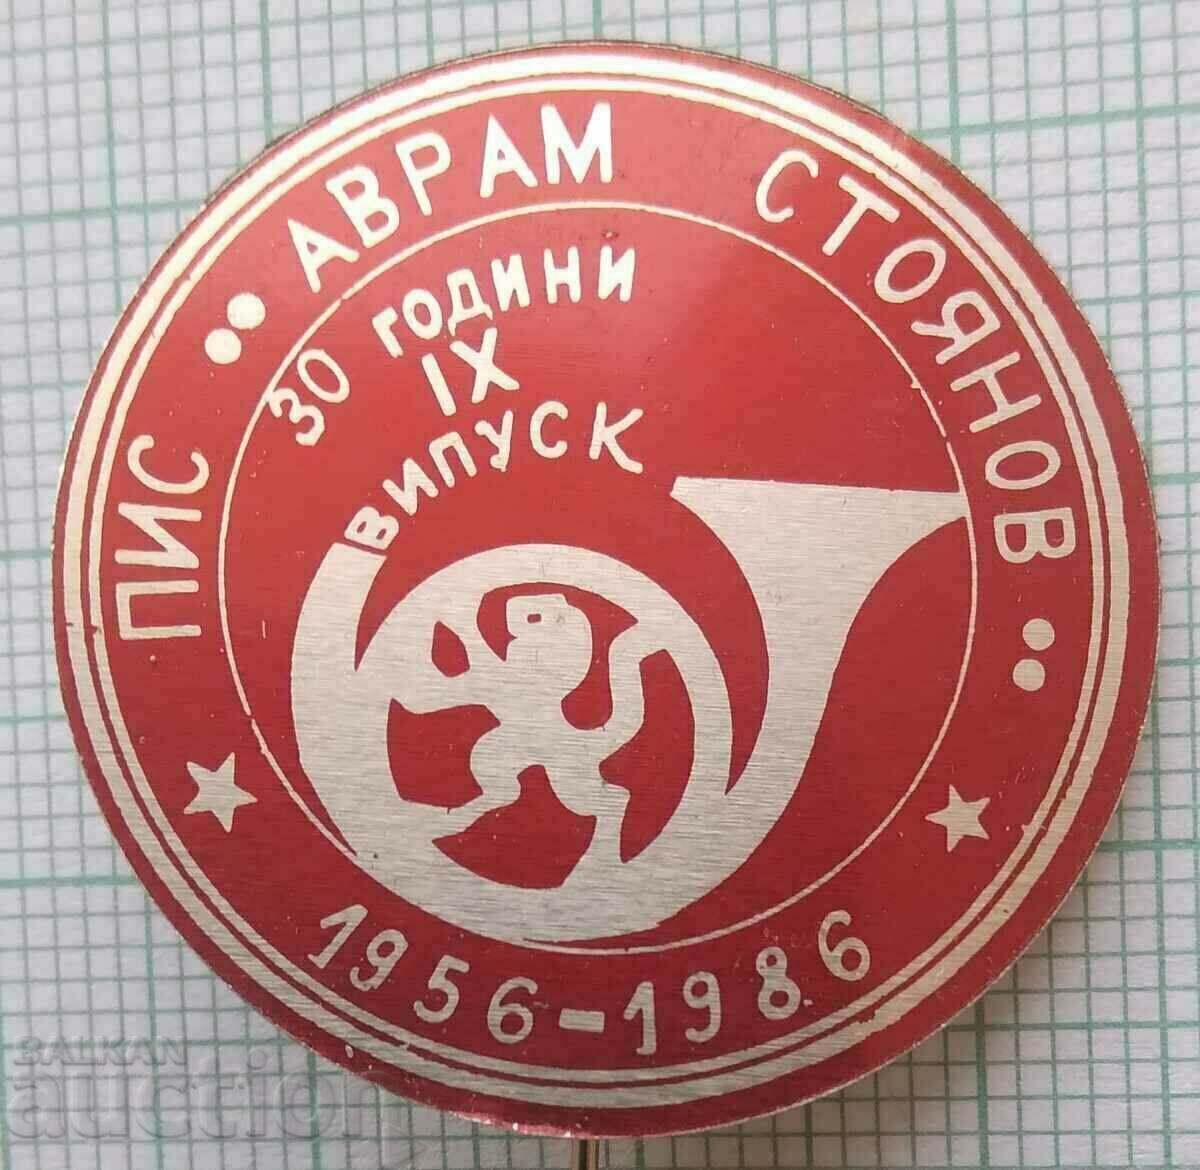 14467 Semi-higher Institute of Commun. Avram Stoyanov - 30 years PIS